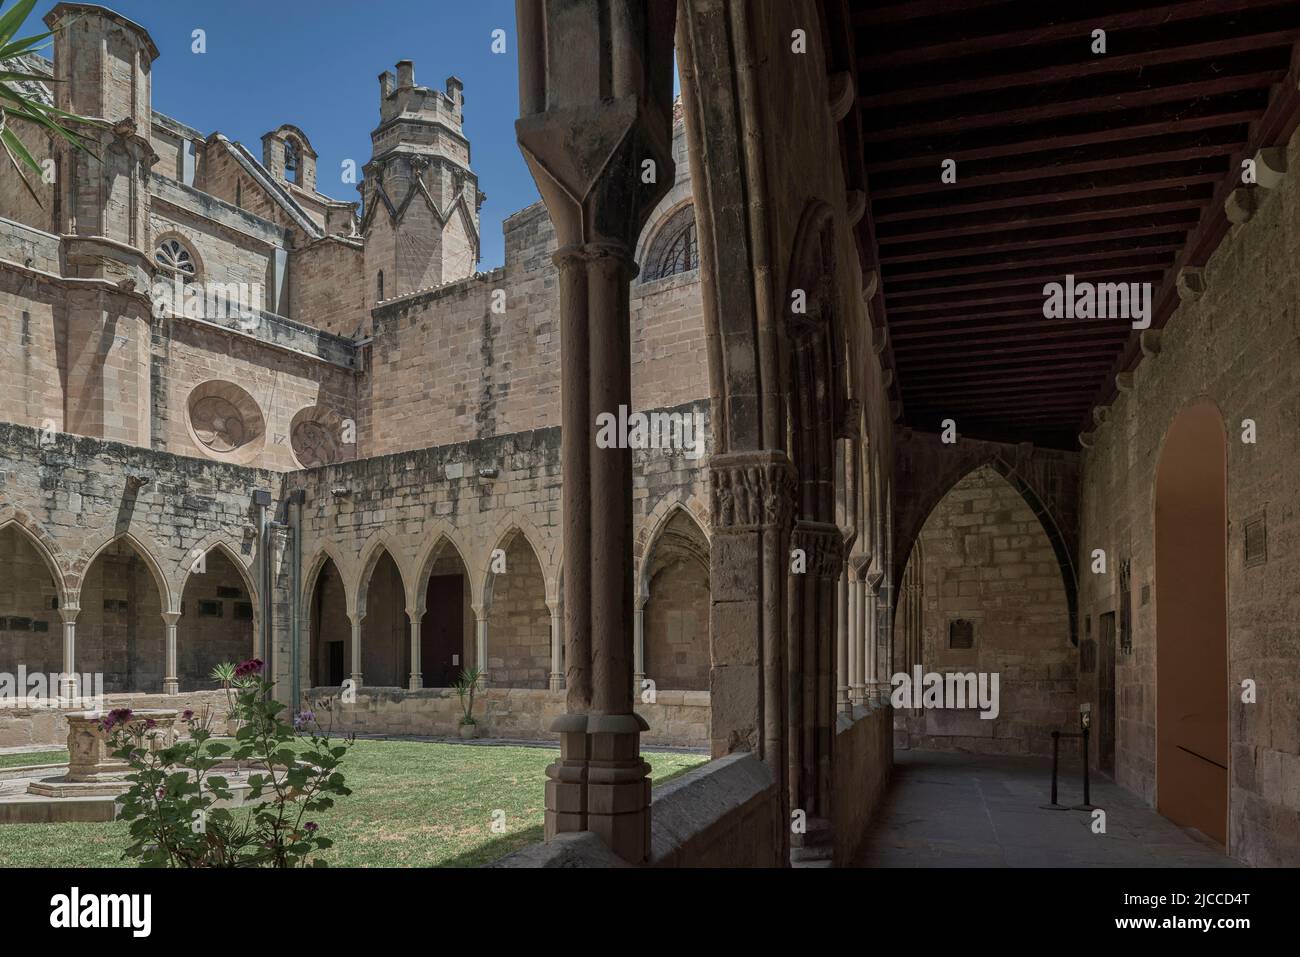 Cloître gothique catalan intérieur de la cathédrale basilique de Santa María de Tortosa datant du 14th siècle, province de Tarragone, Catalogne, Espagne, Europe Banque D'Images